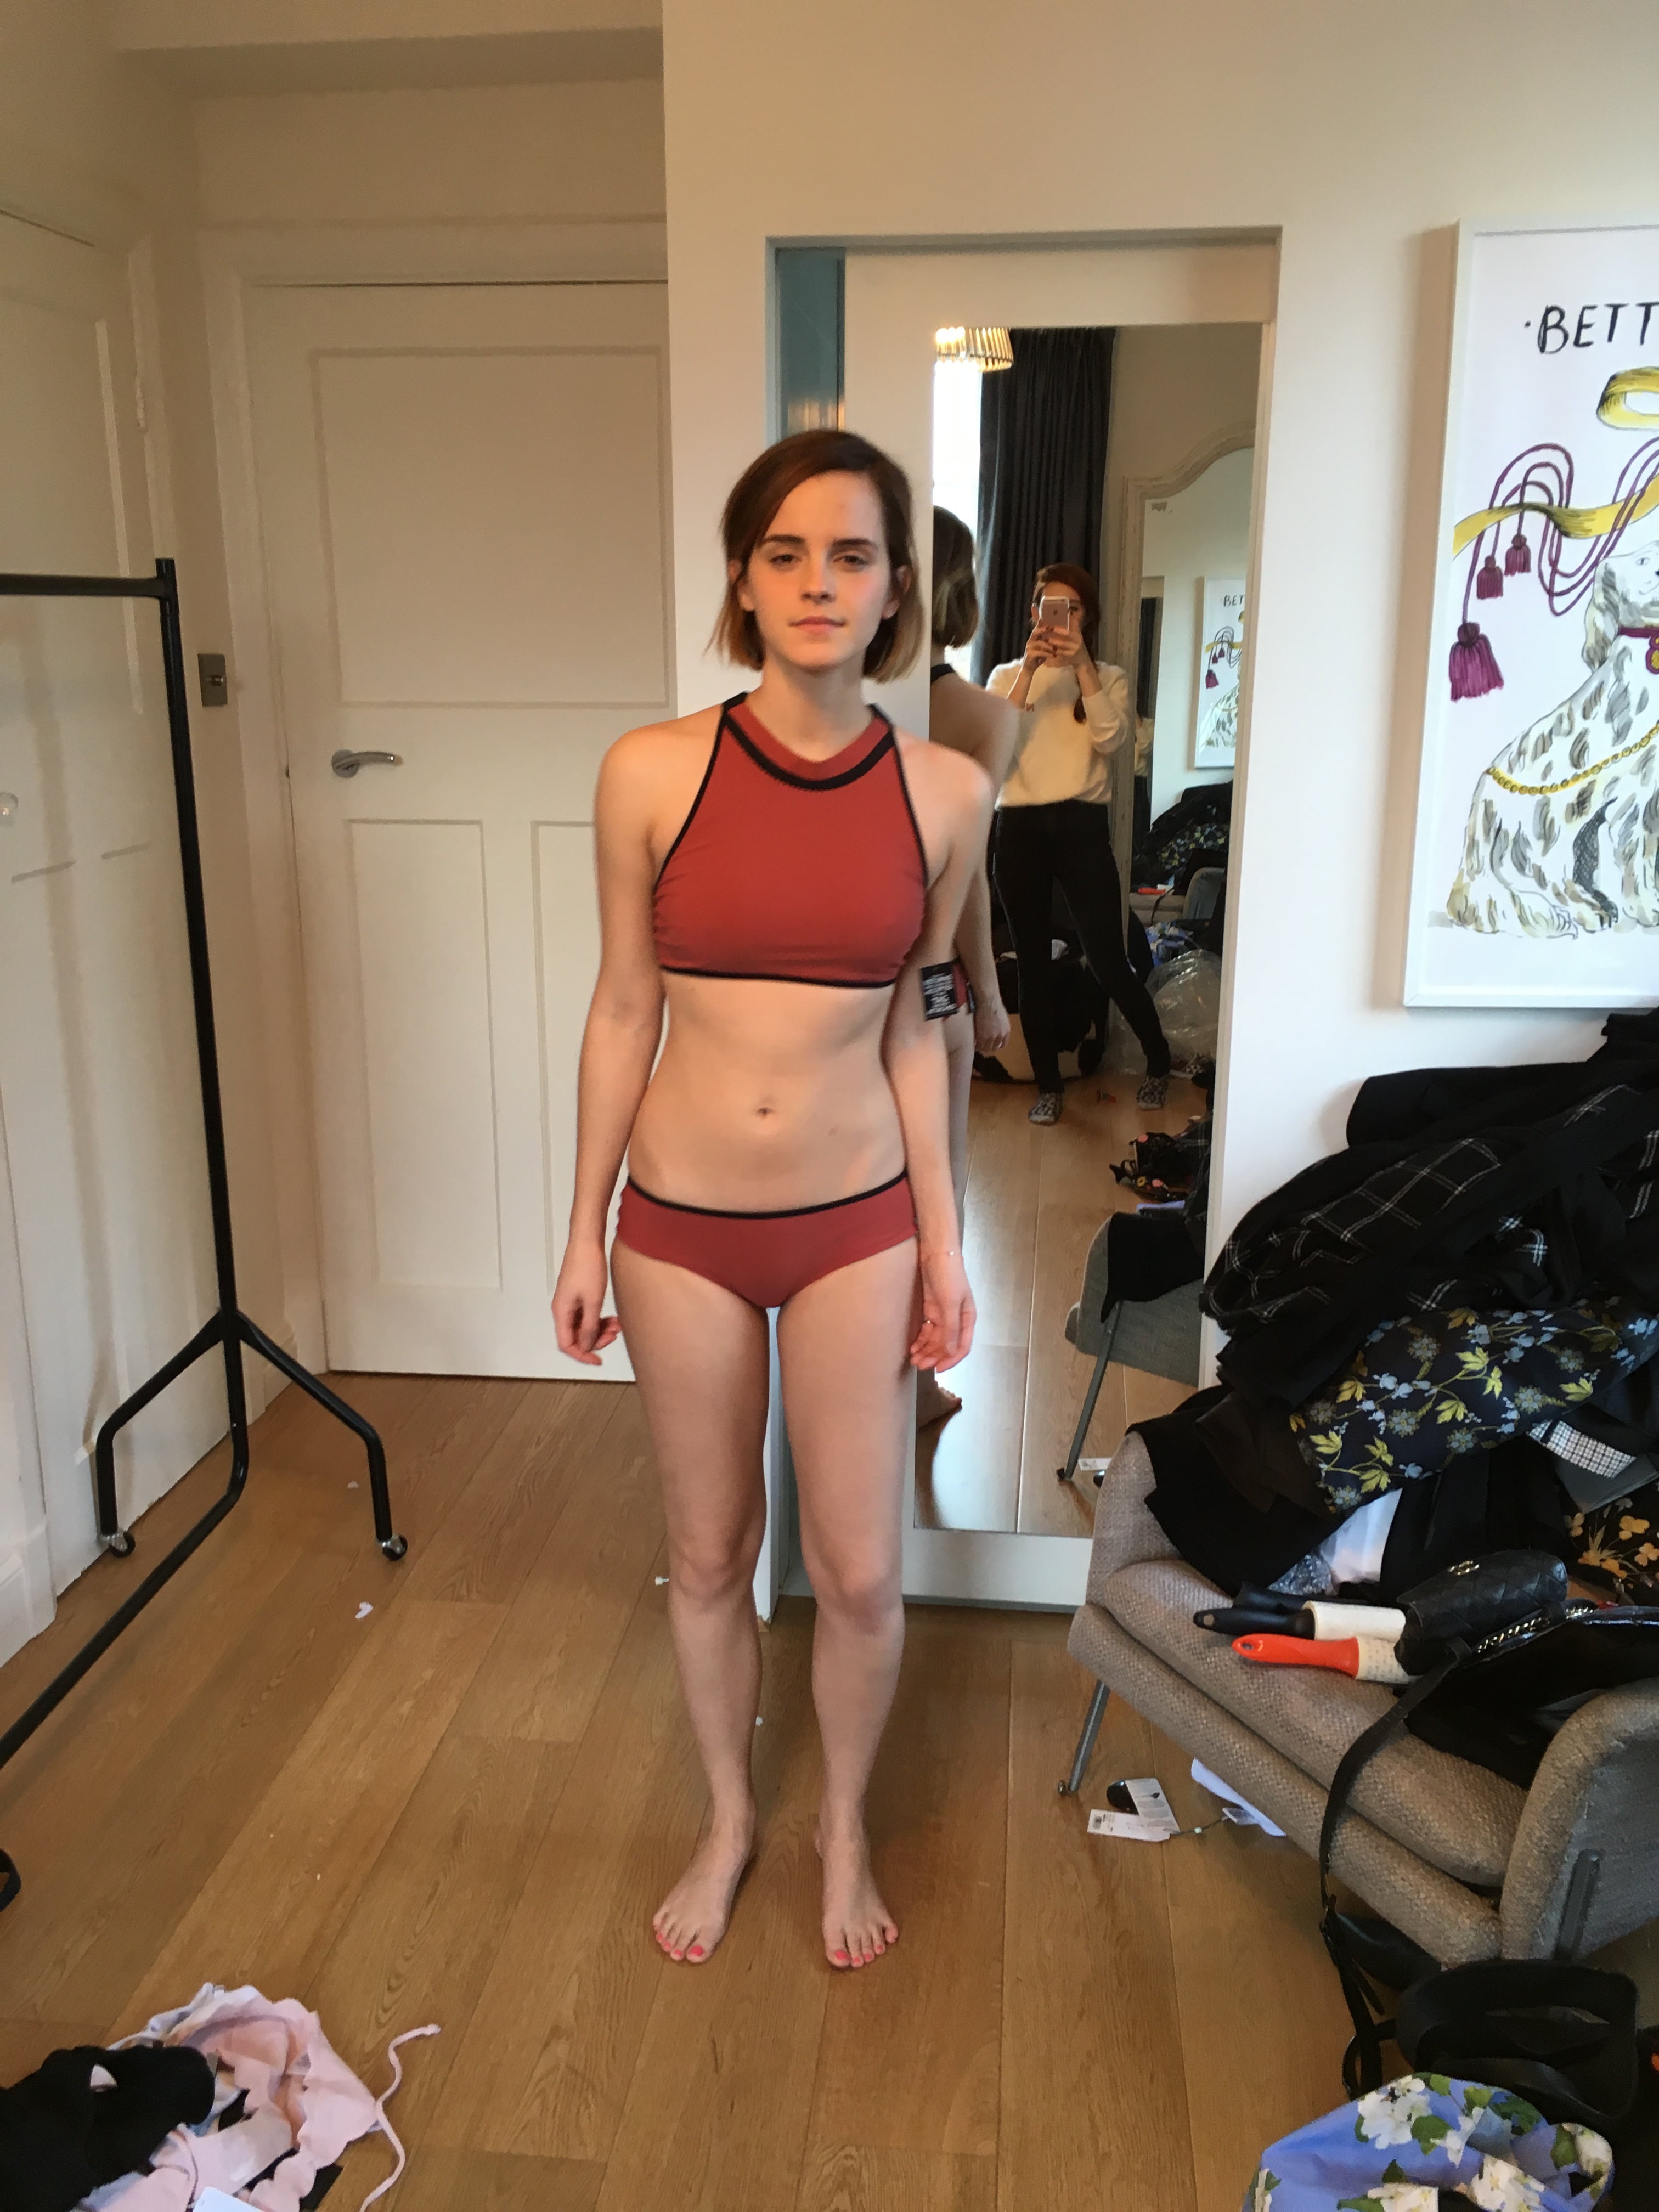 Emma Watson ass